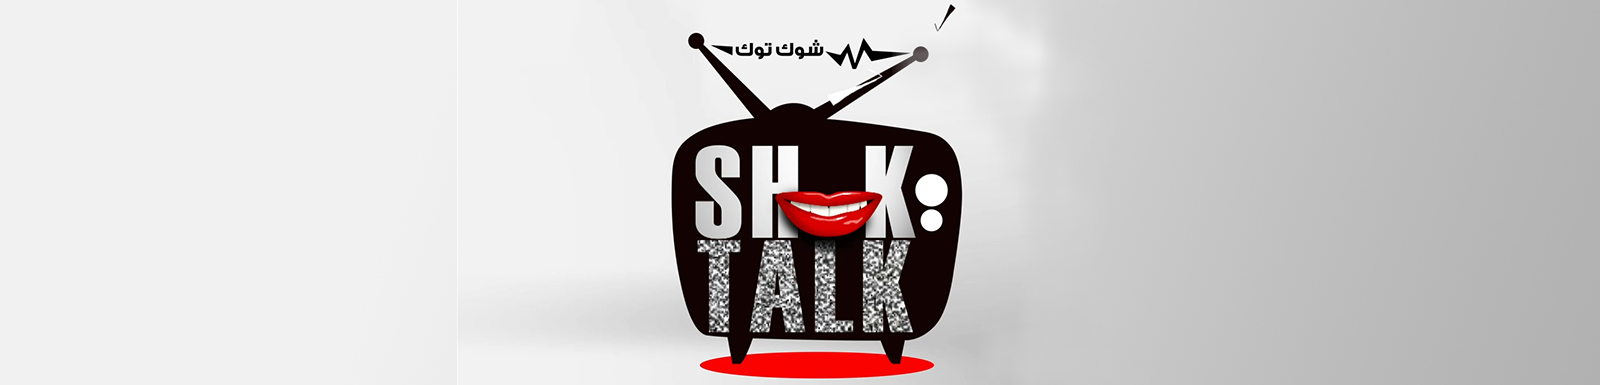 تحميل برنامج شوك توك الحلقة 34 كاملة MBC shahid شاهد نت